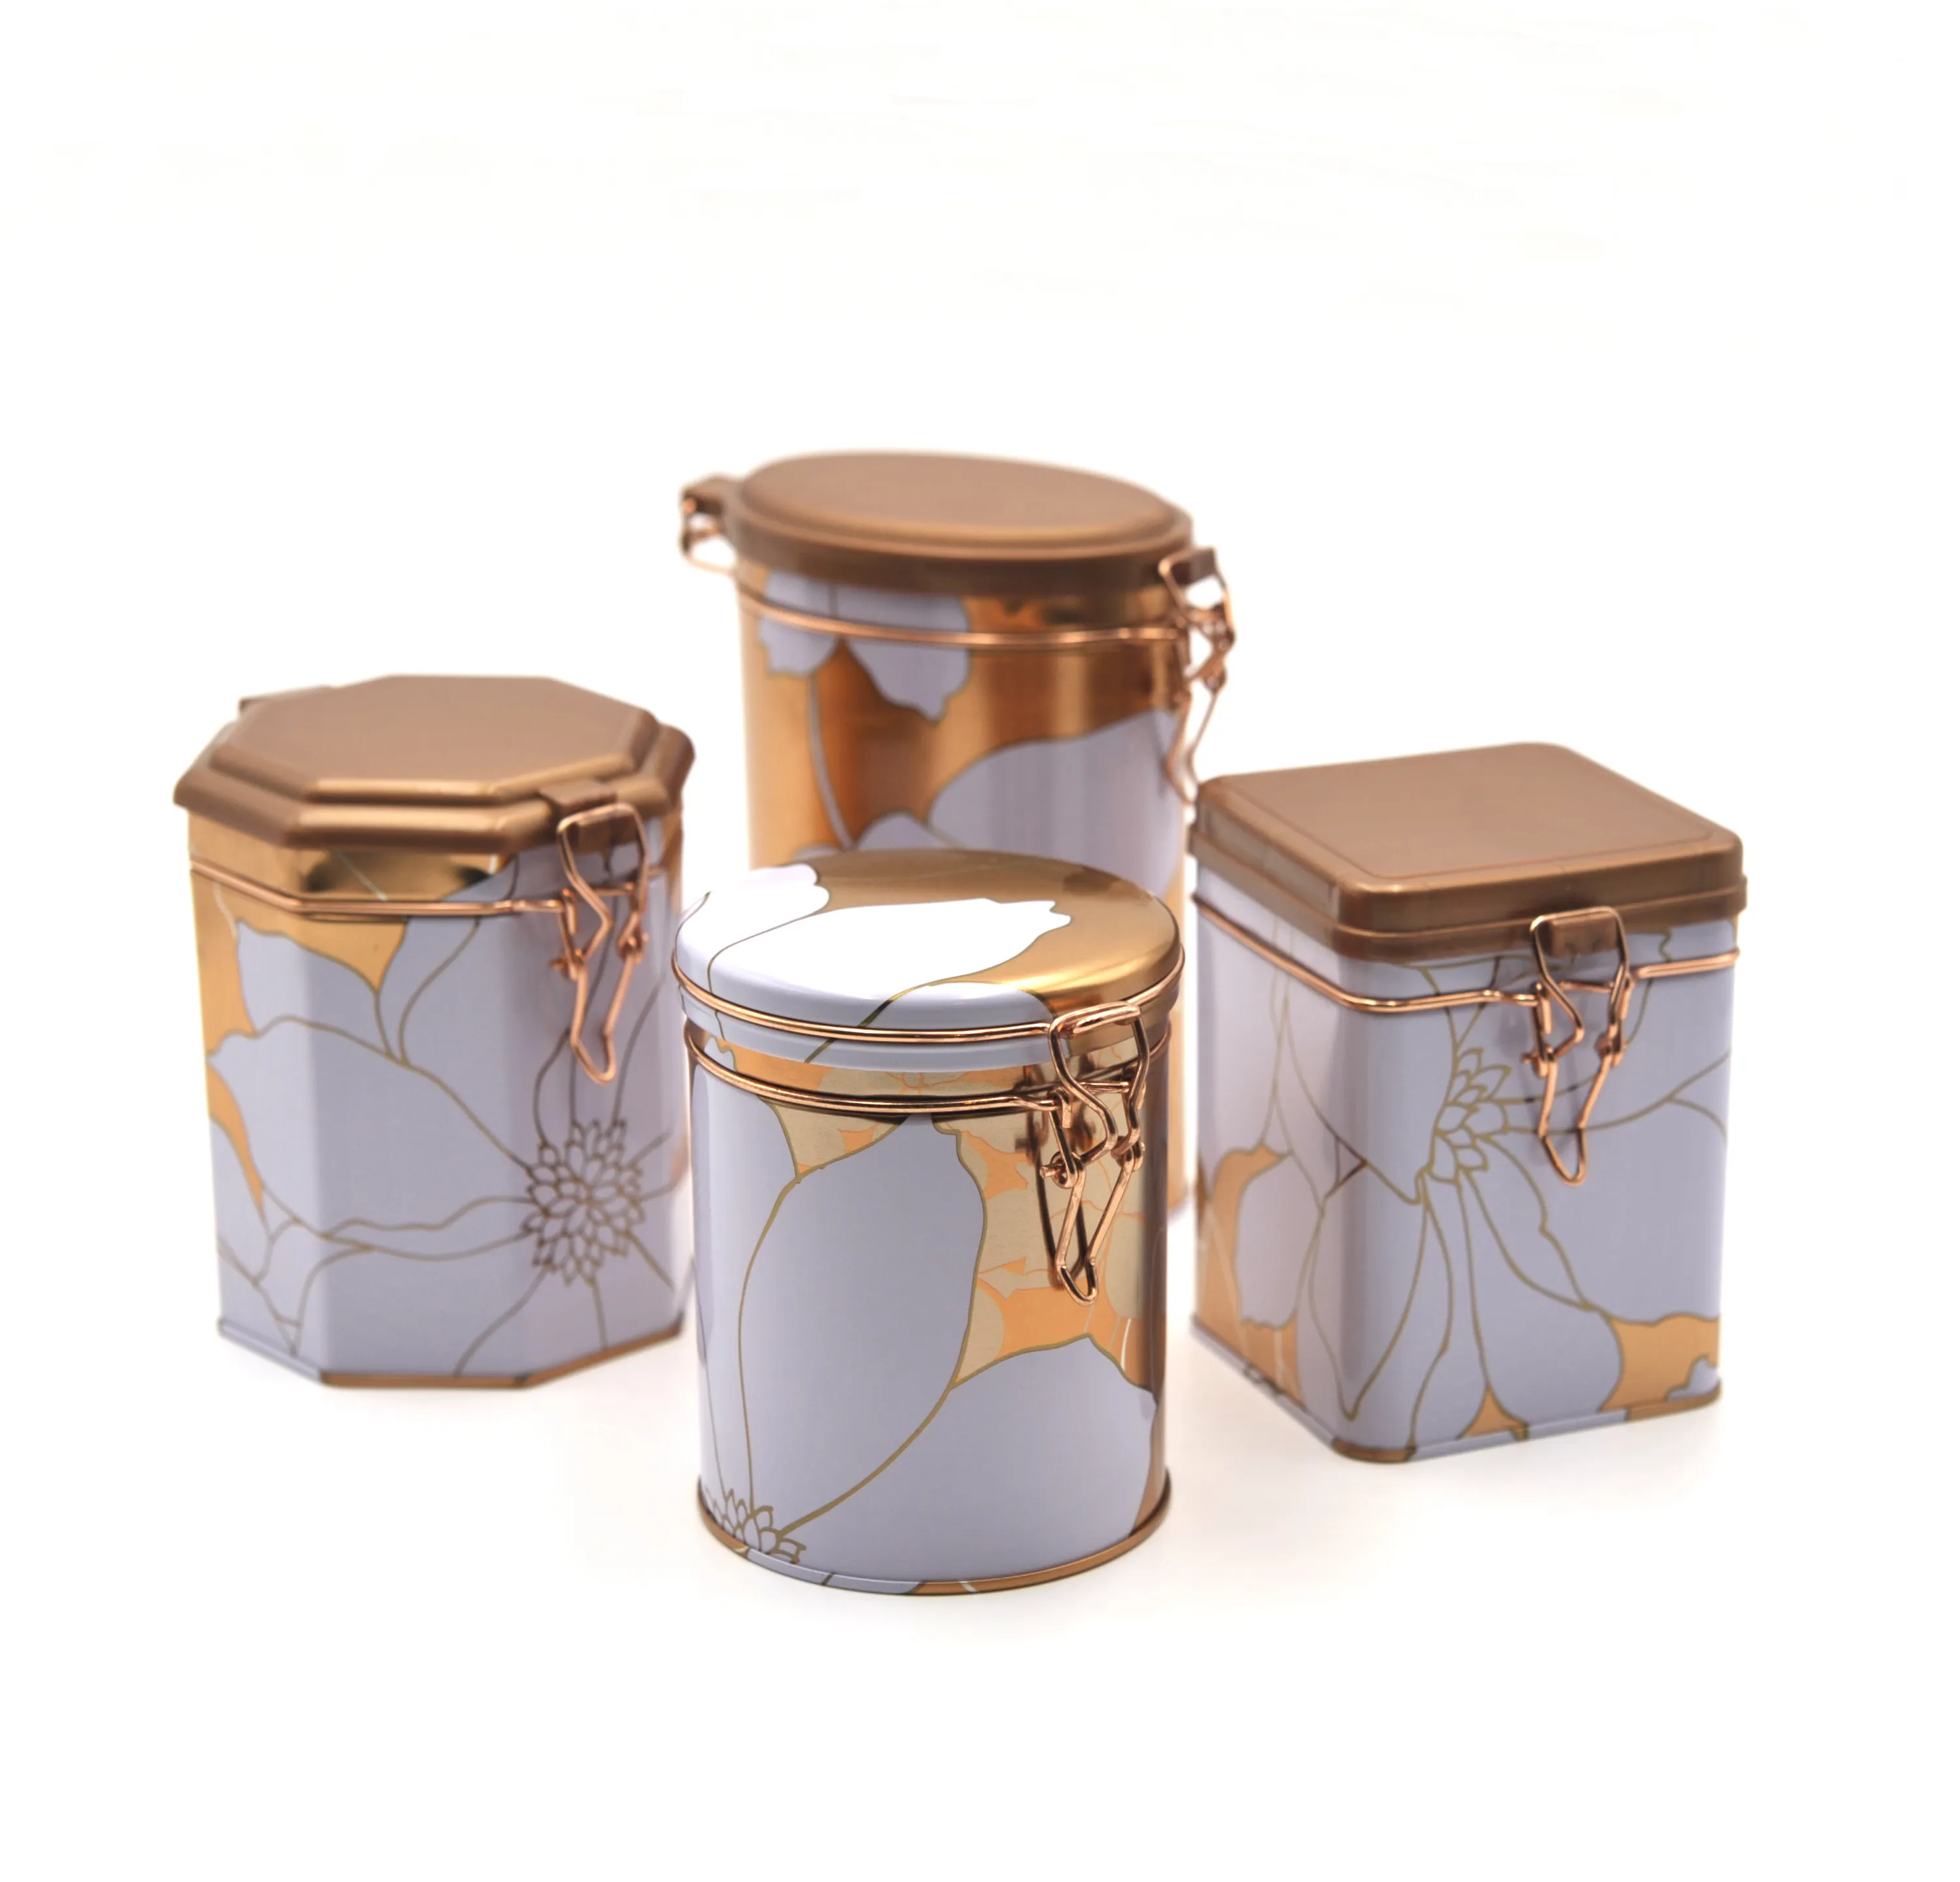 Luftdichte Blechdose aus Metall in achteckiger Form für Kaffee-Tee-Verpackungen